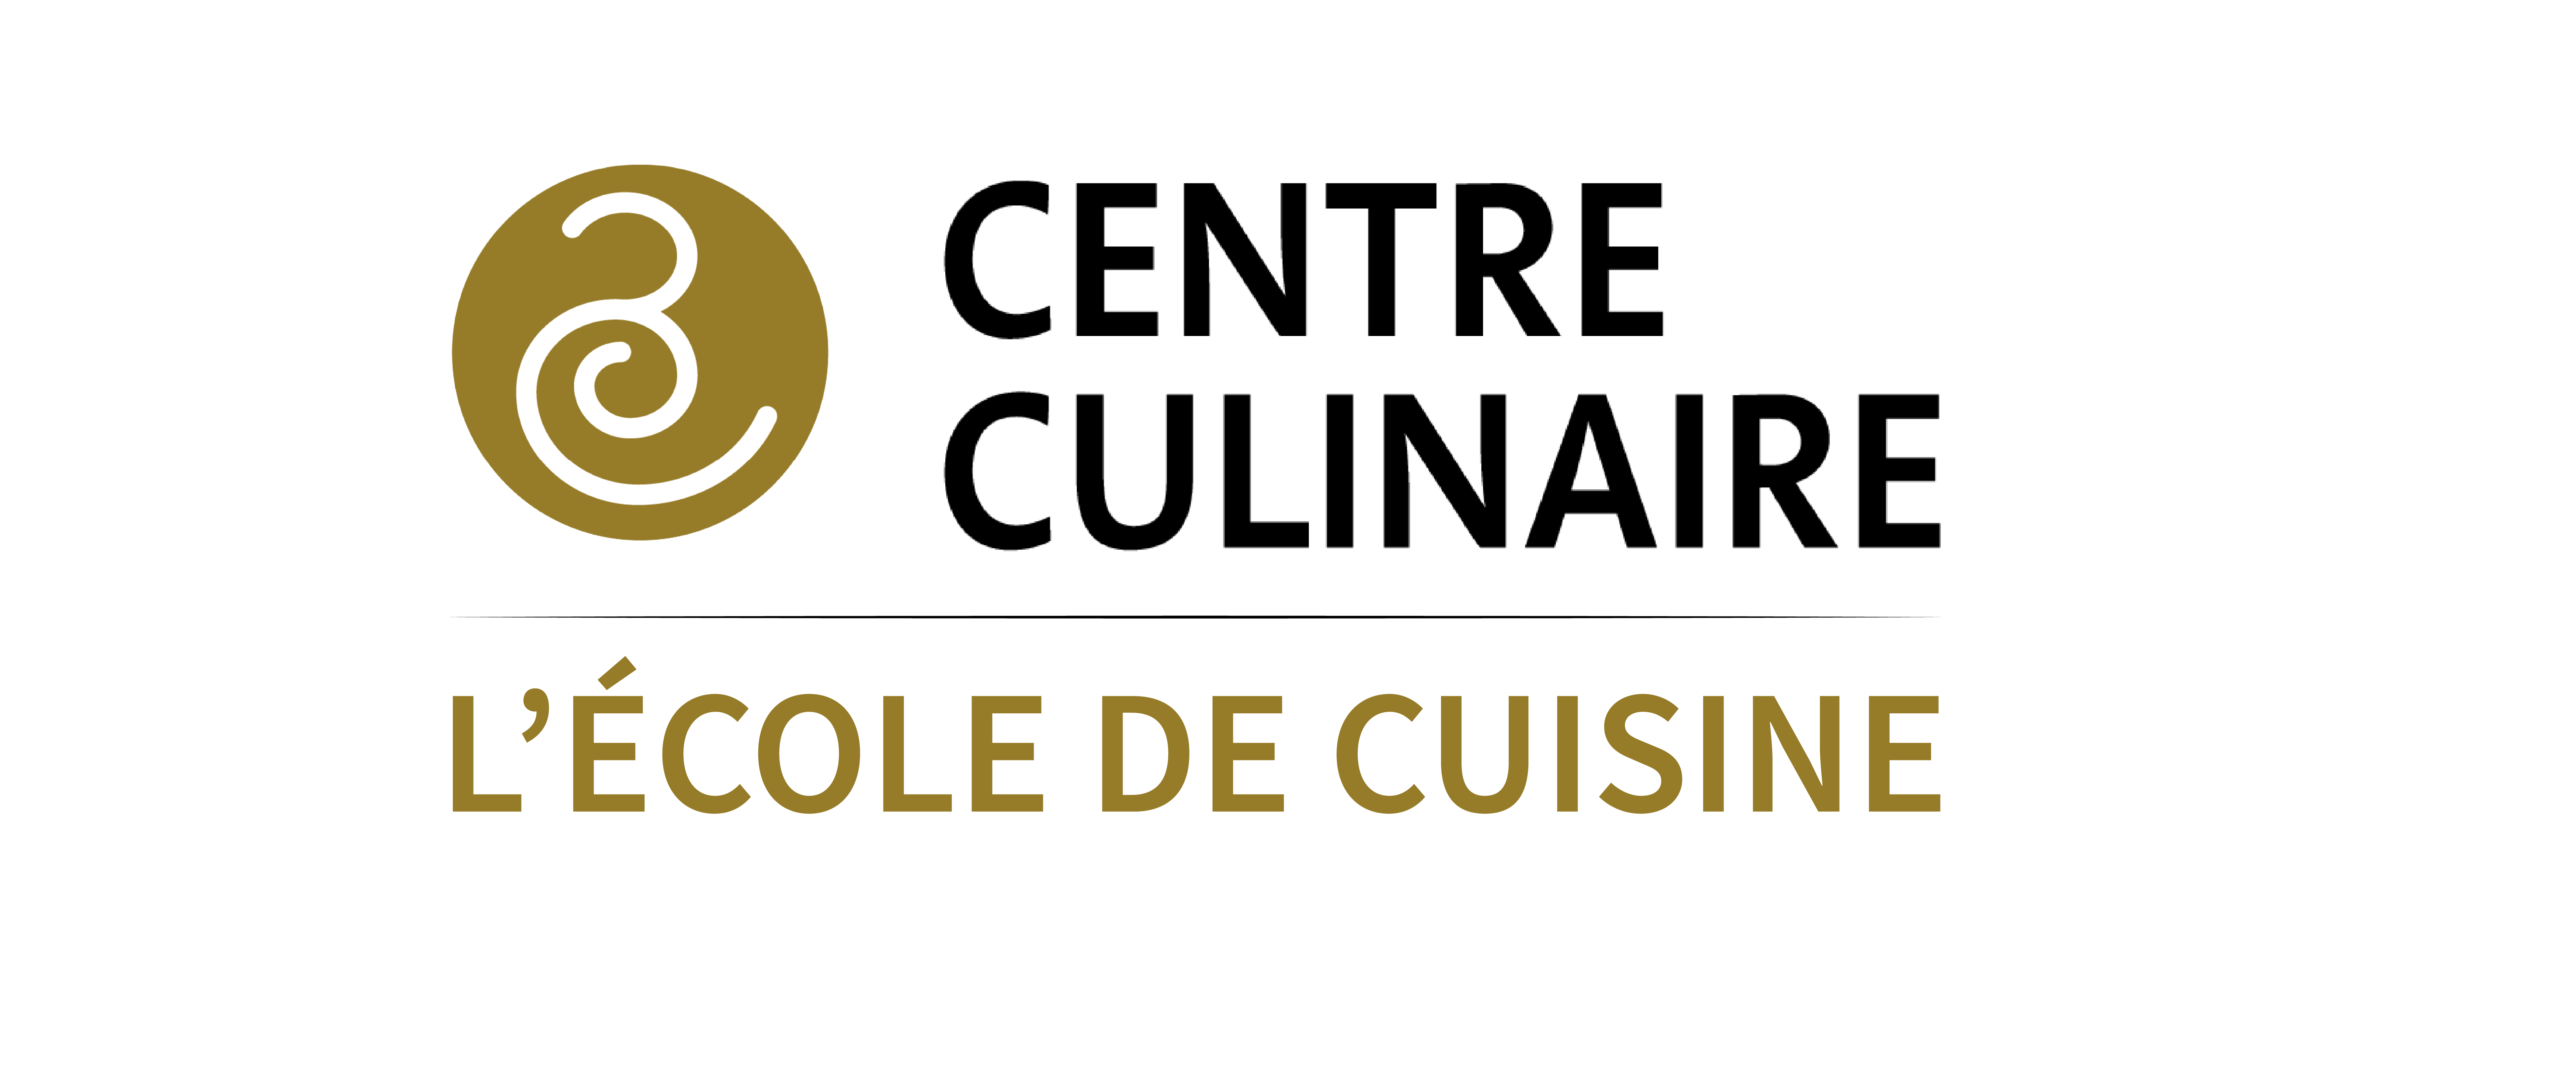 Centre Culinaire Contemporain, une plateforme B2B et B2C avec réservation de cours en ligne